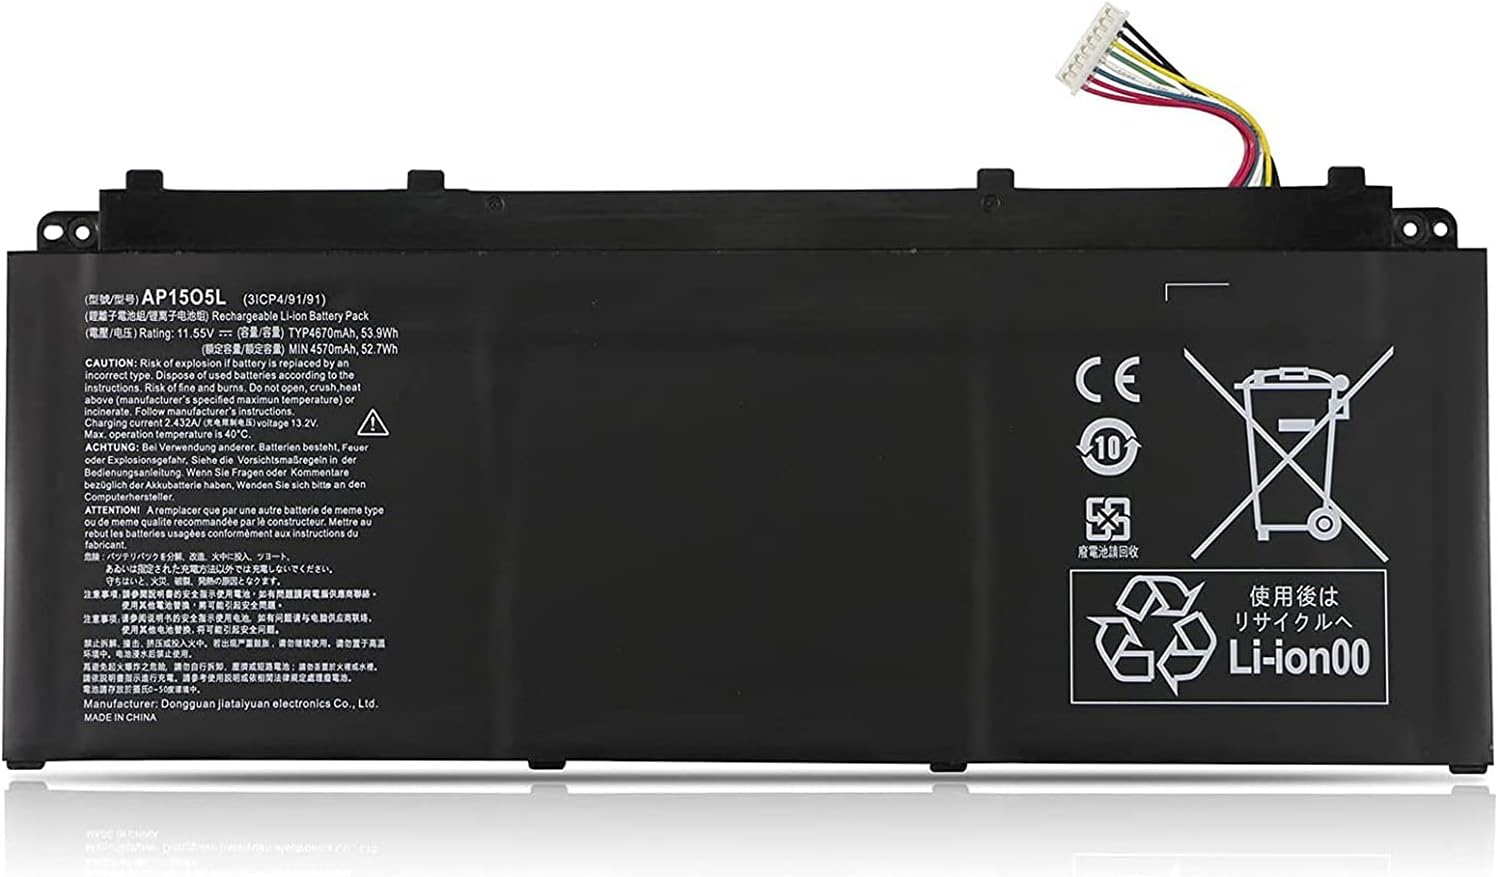 Acer Aspire S 13 Swift 1 Swift 5 Chromebook R 13 Predator Triton 700 kompatybilny bateria - Kliknij obrazek, aby zamkn±æ